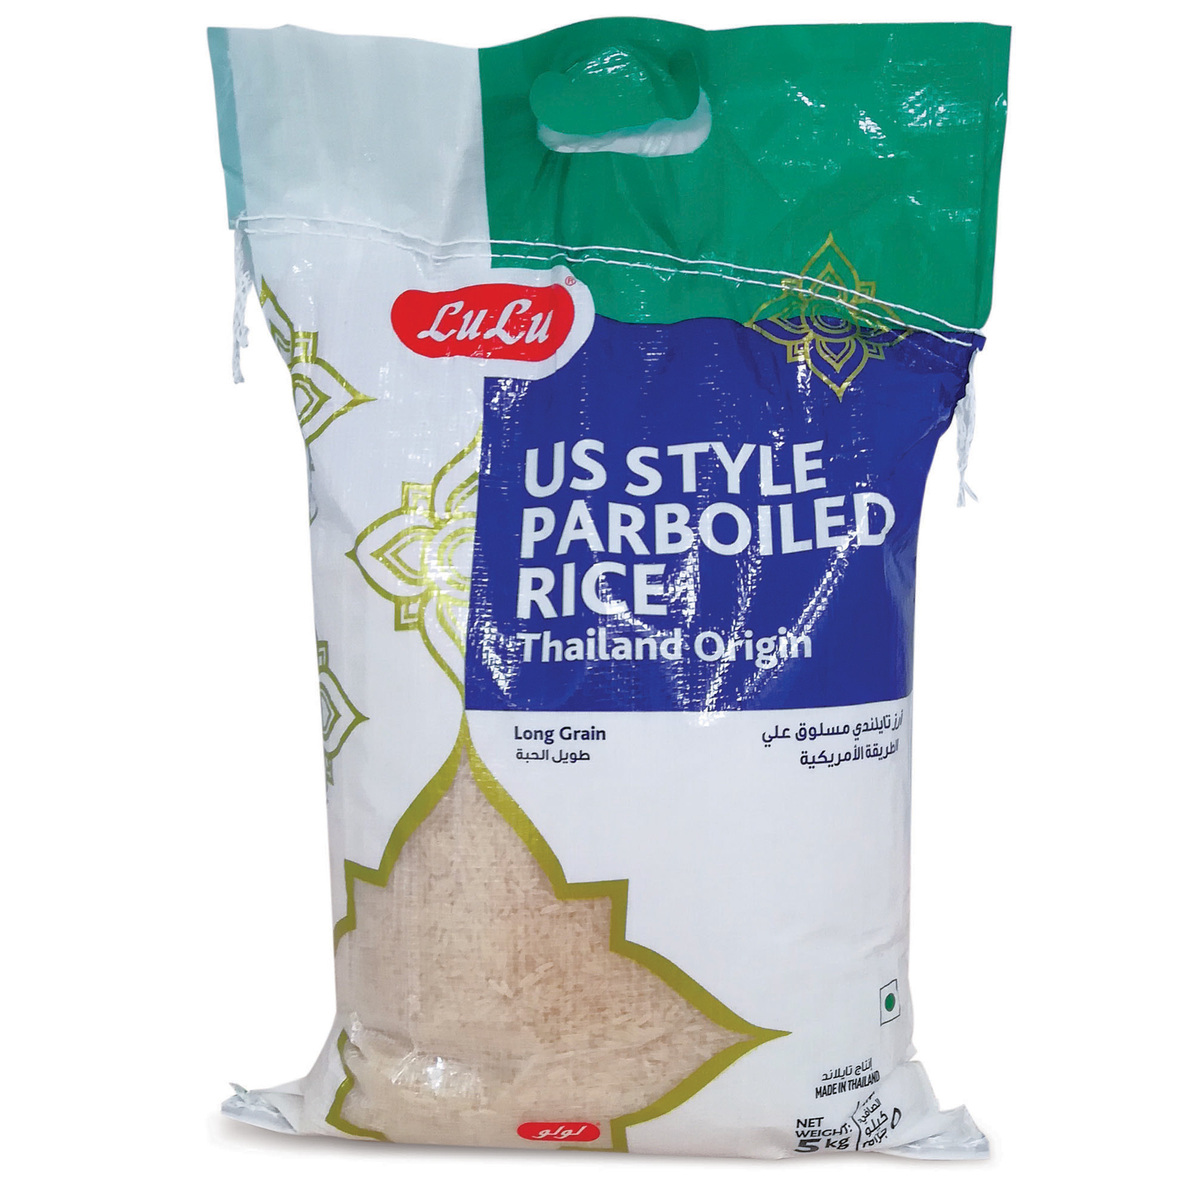 Lulu Thai Parboiled US Style Rice 5kg